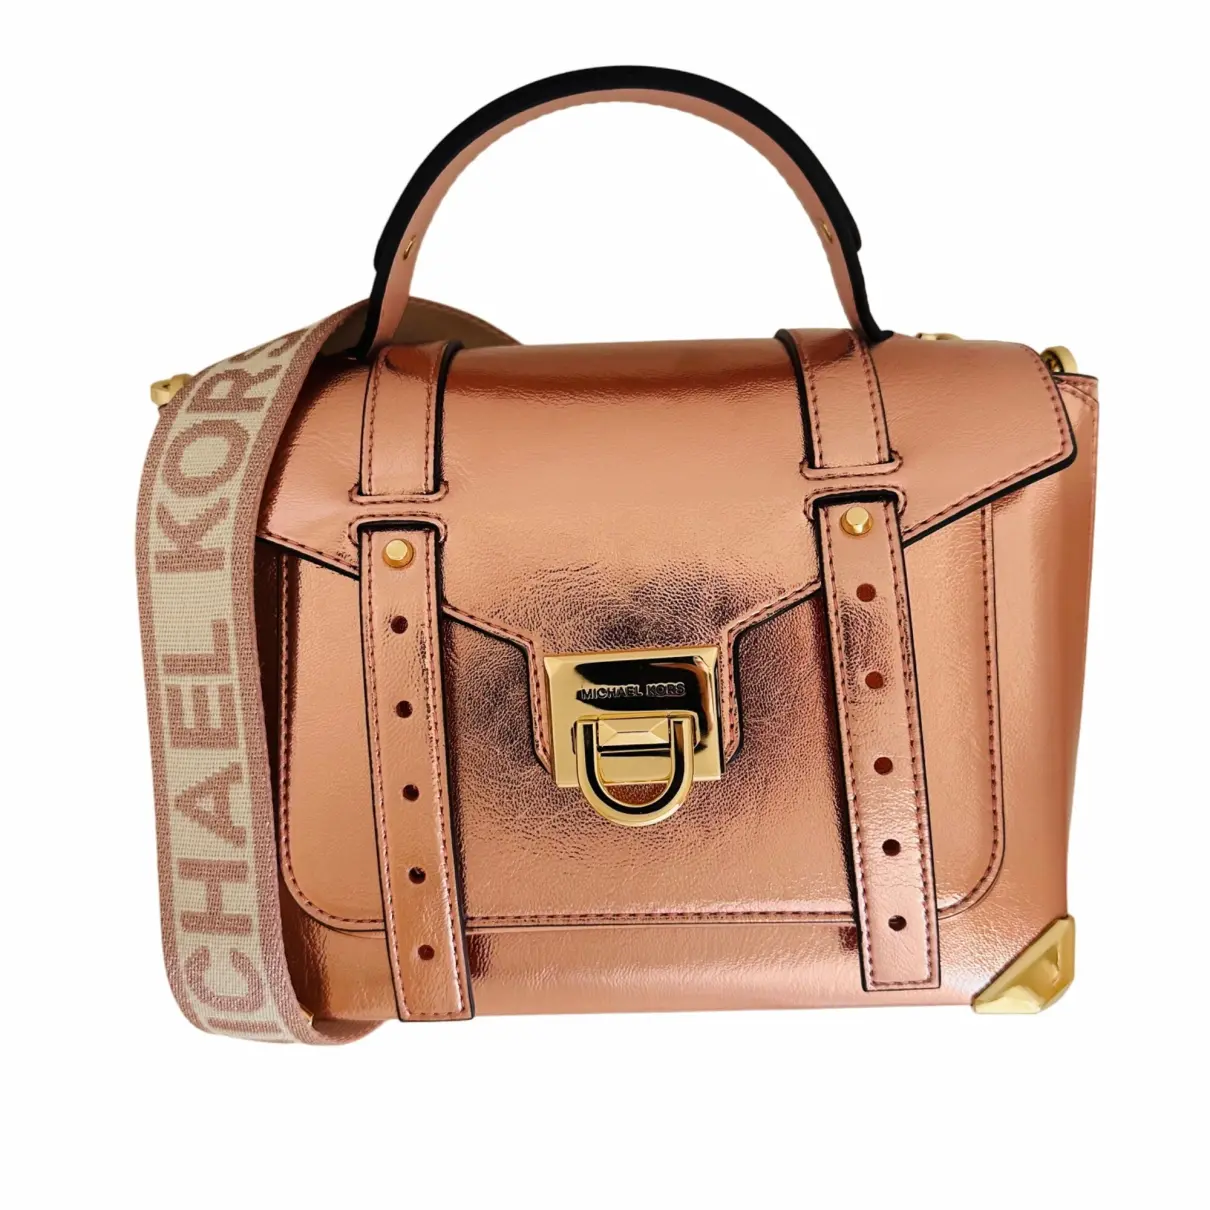 Manhattan leather satchel